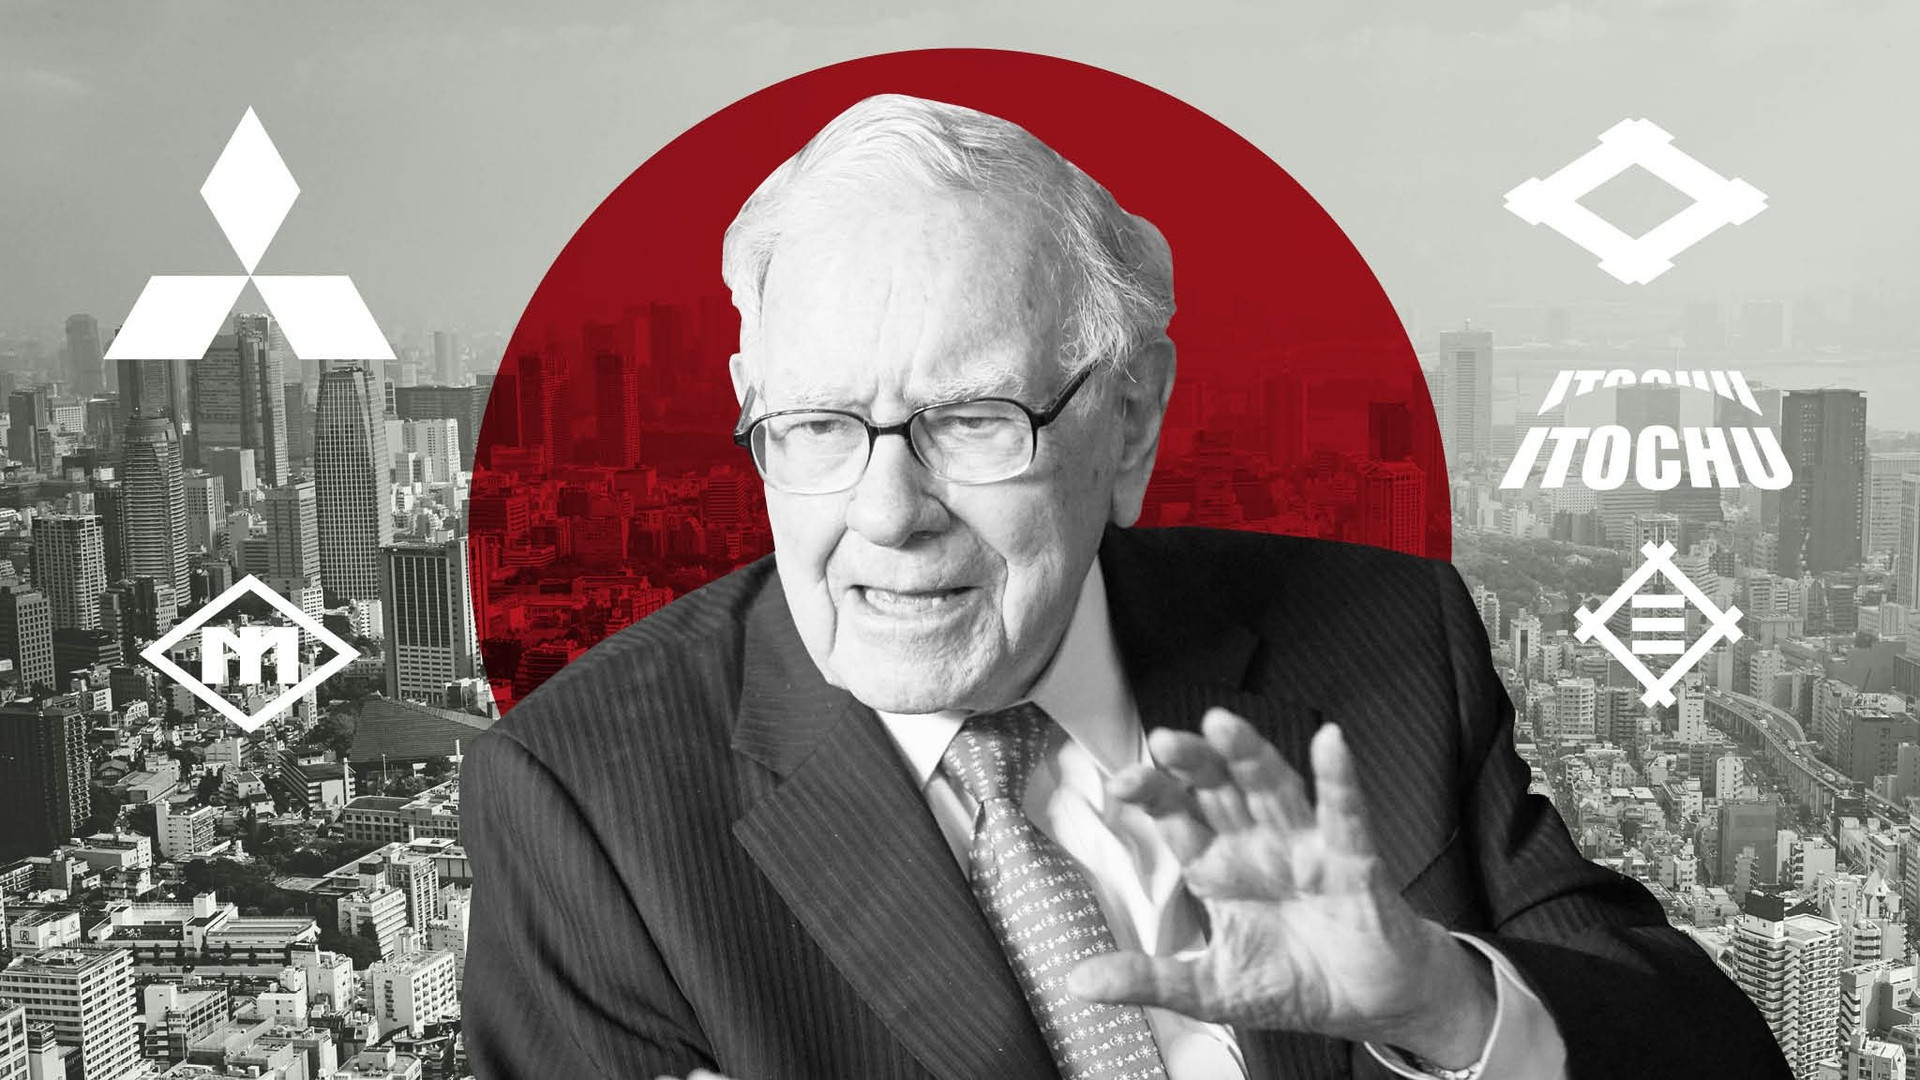 Lý giải khoản đầu tư 'độc lạ' của Warren Buffett vào 1 quốc gia châu Á: Nhìn qua tưởng ảm đạm nhưng thực chất là 'cỗ máy in tiền' ai cũng muốn 'chen chân' - Ảnh 1.